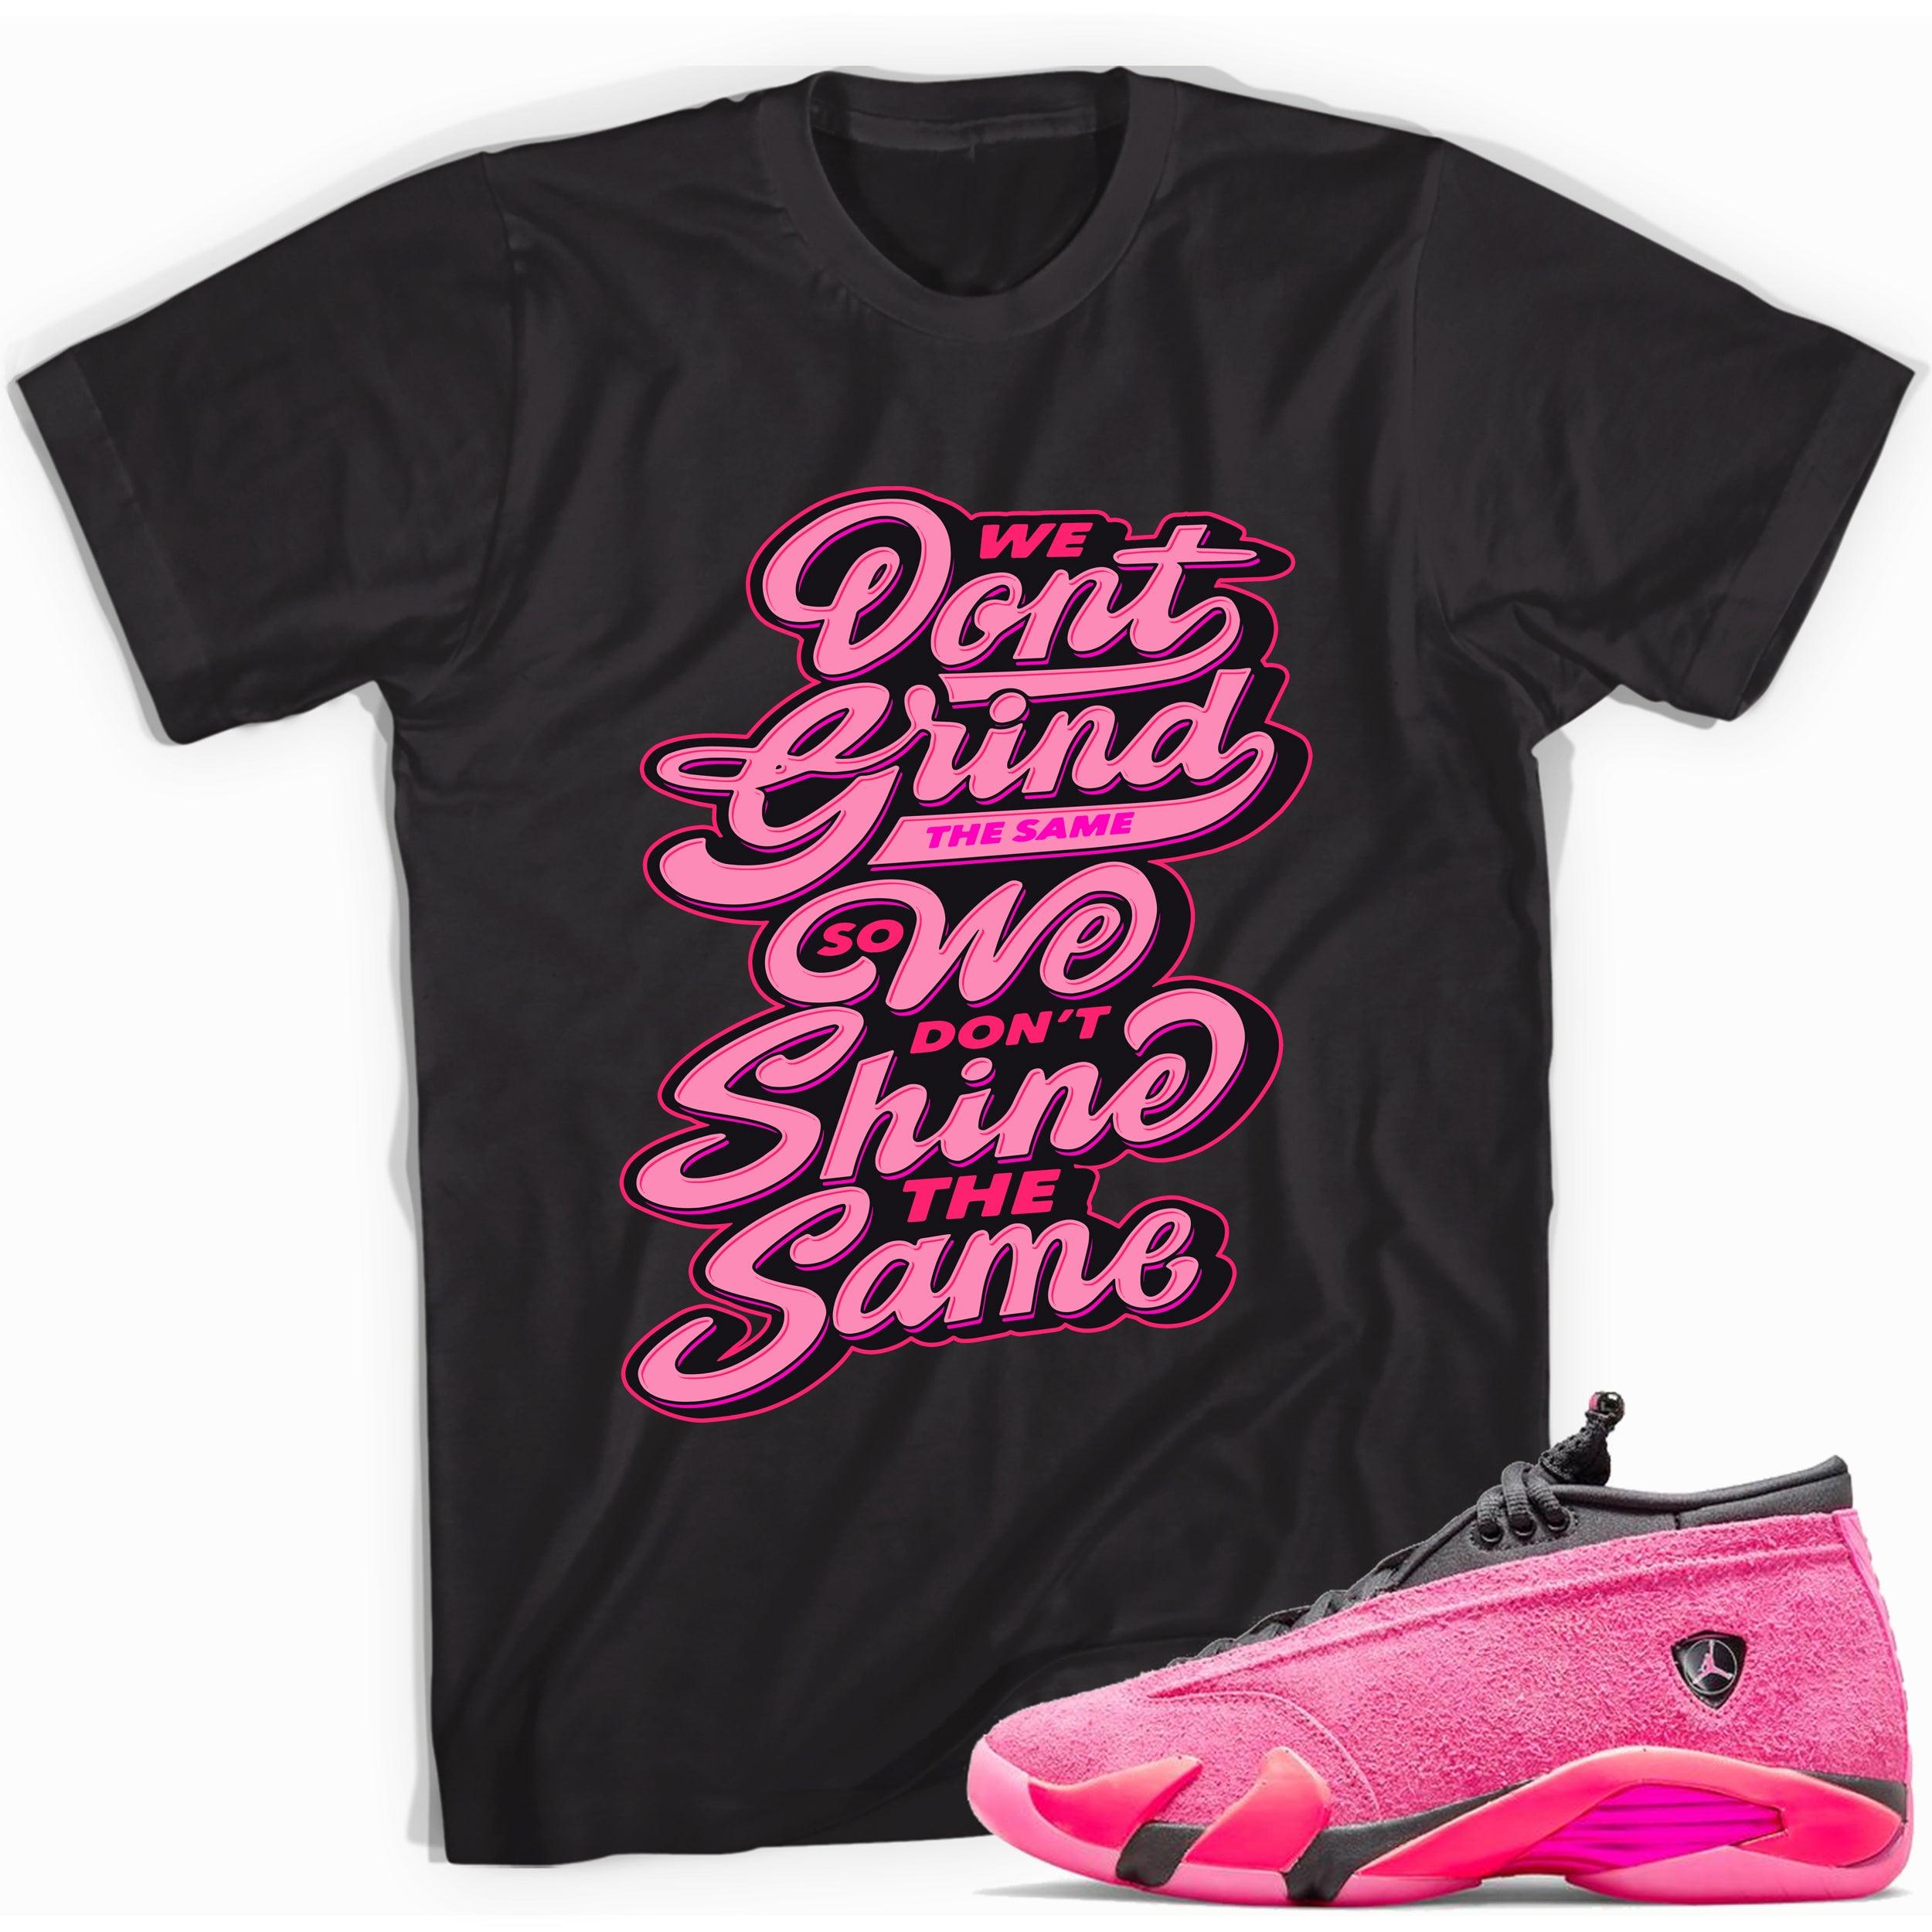 Black Grind and Shine Shirt Jordan 14s Low Shocking Pink photo